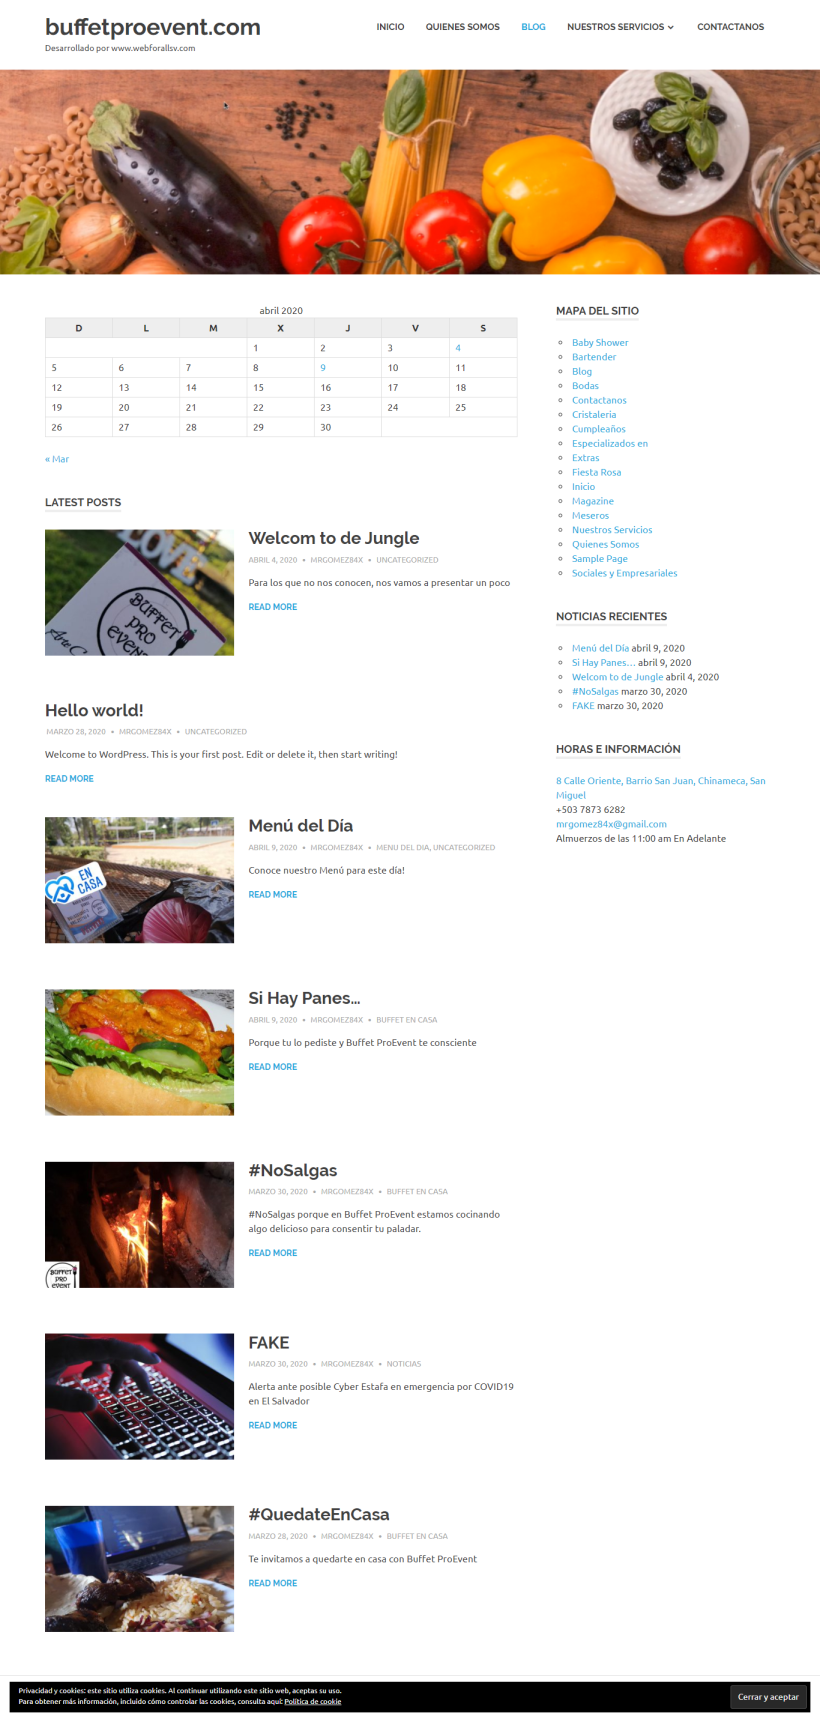 Mi Proyecto del curso: Creación de una web profesional con WordPress 1